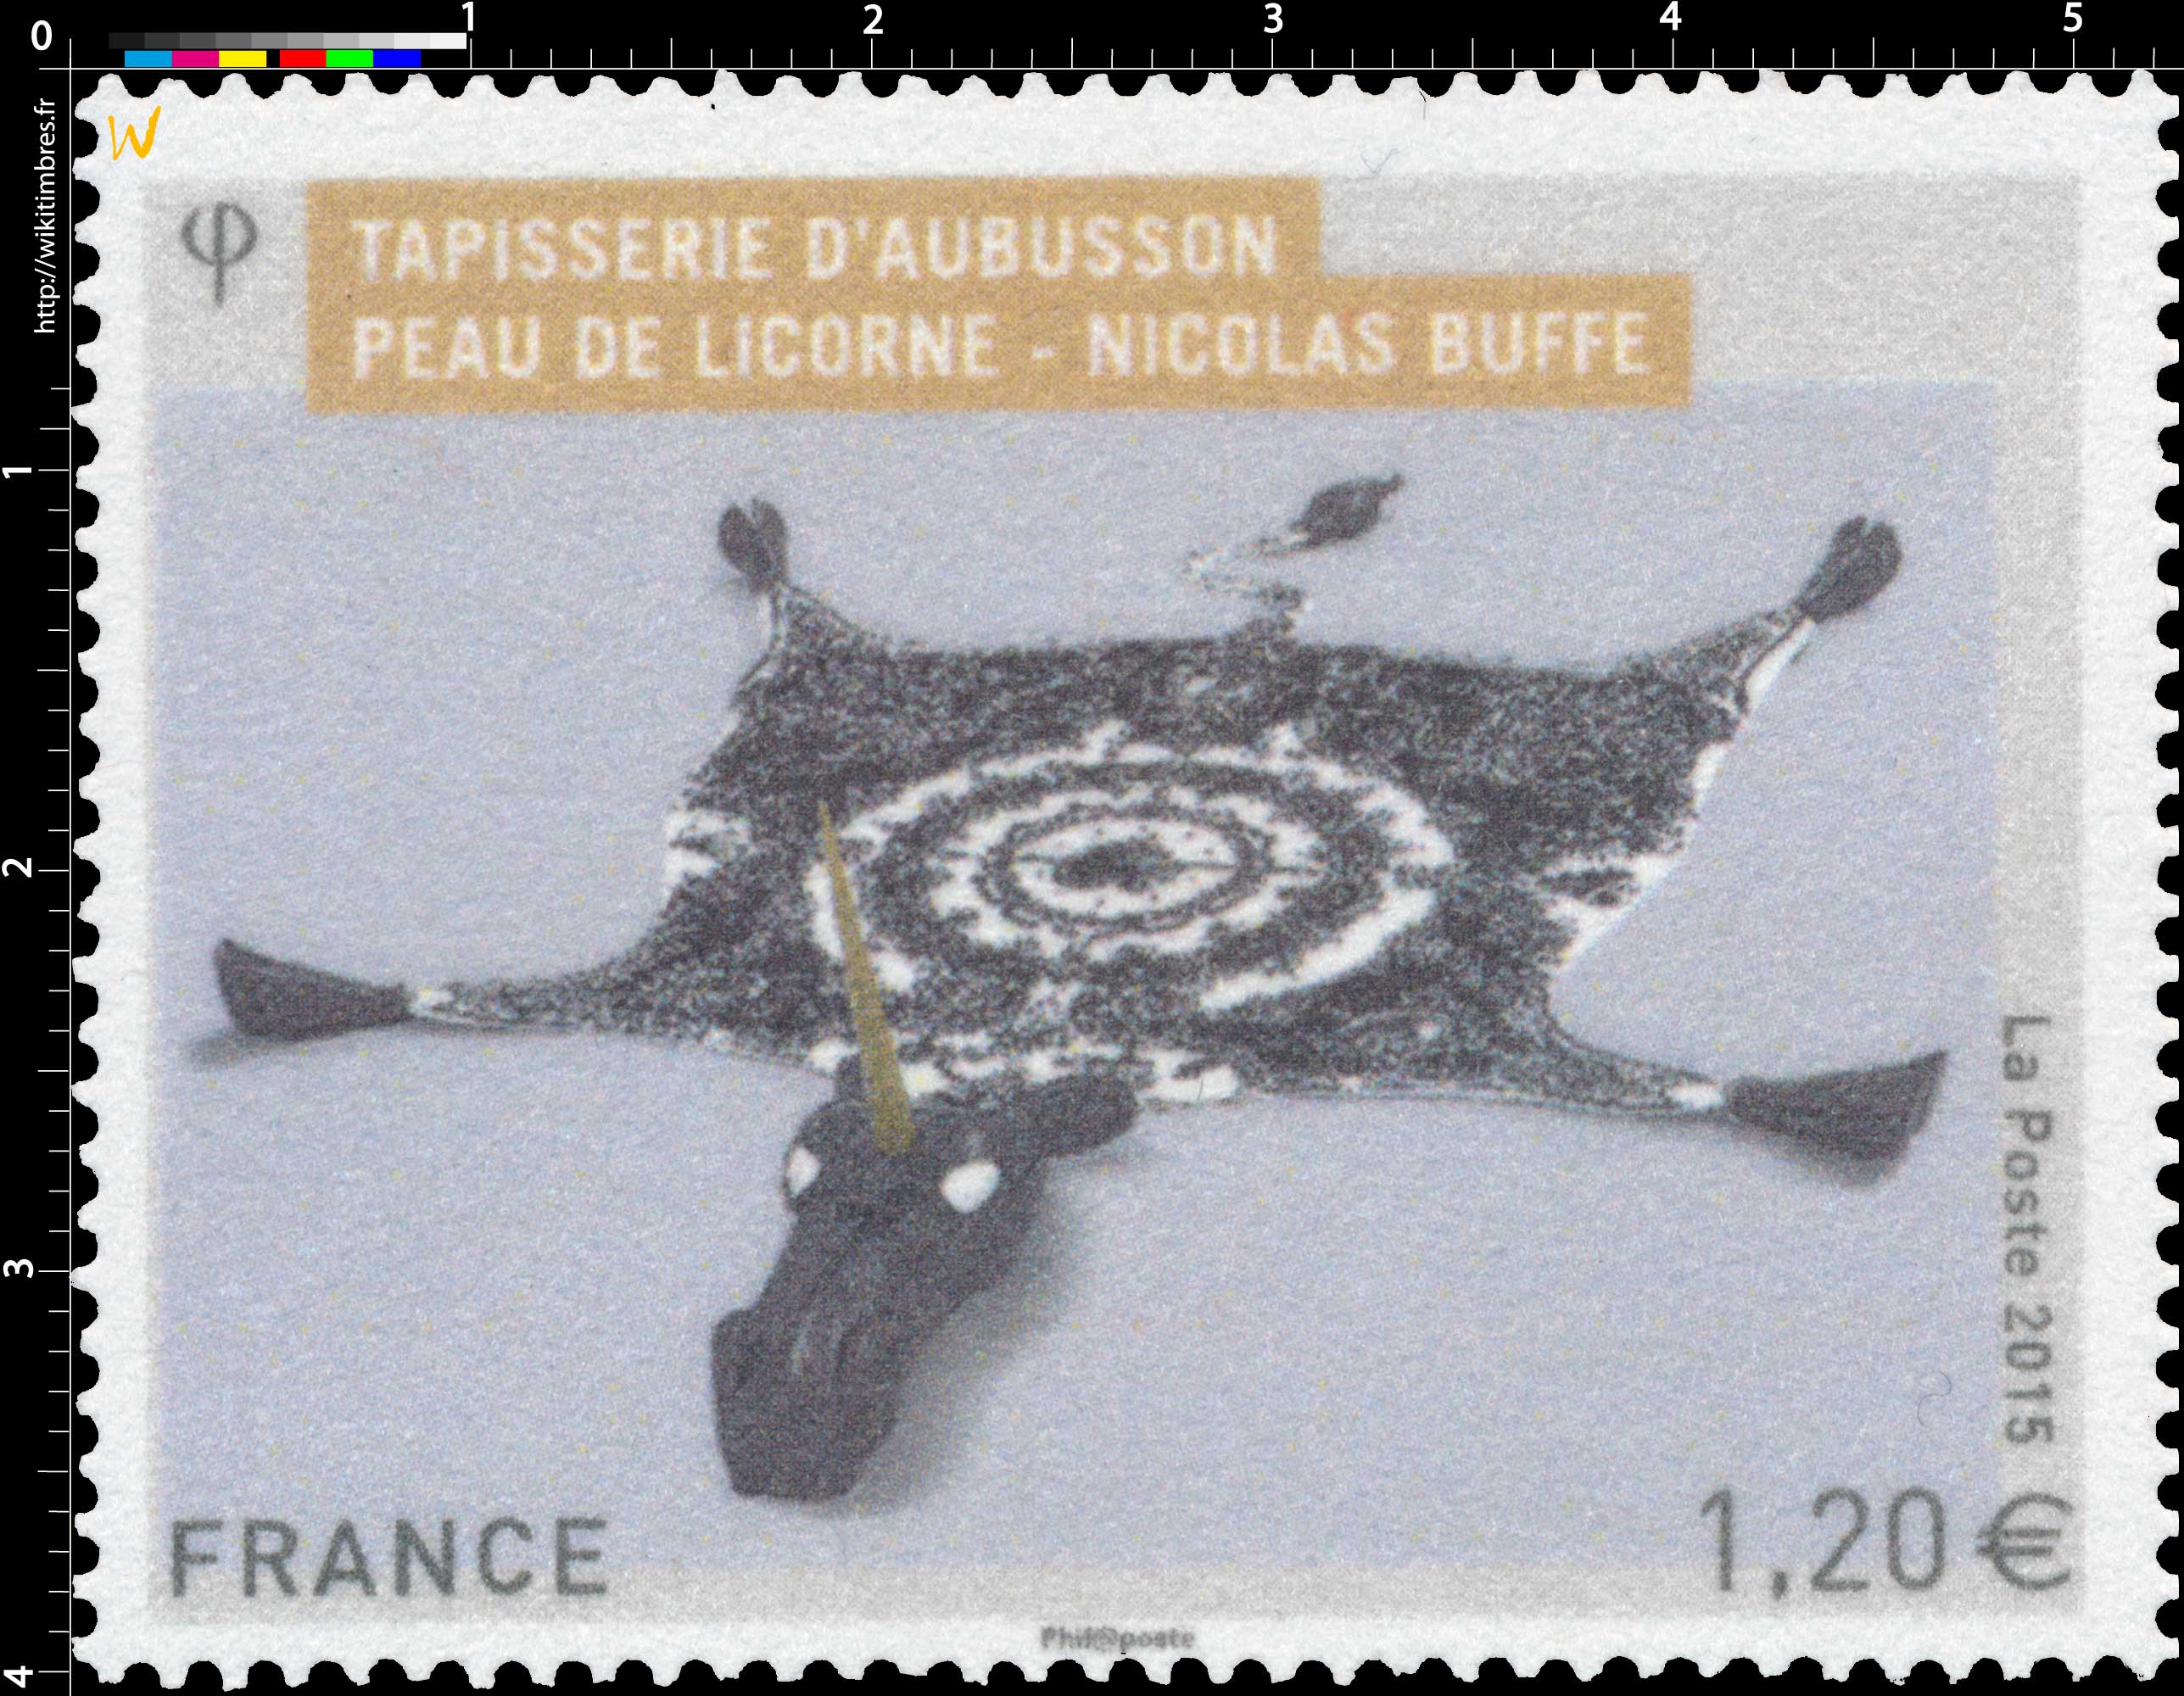 2015 Tapisserie d'Aubusson - Peau de licorne - Nicolas Buffe